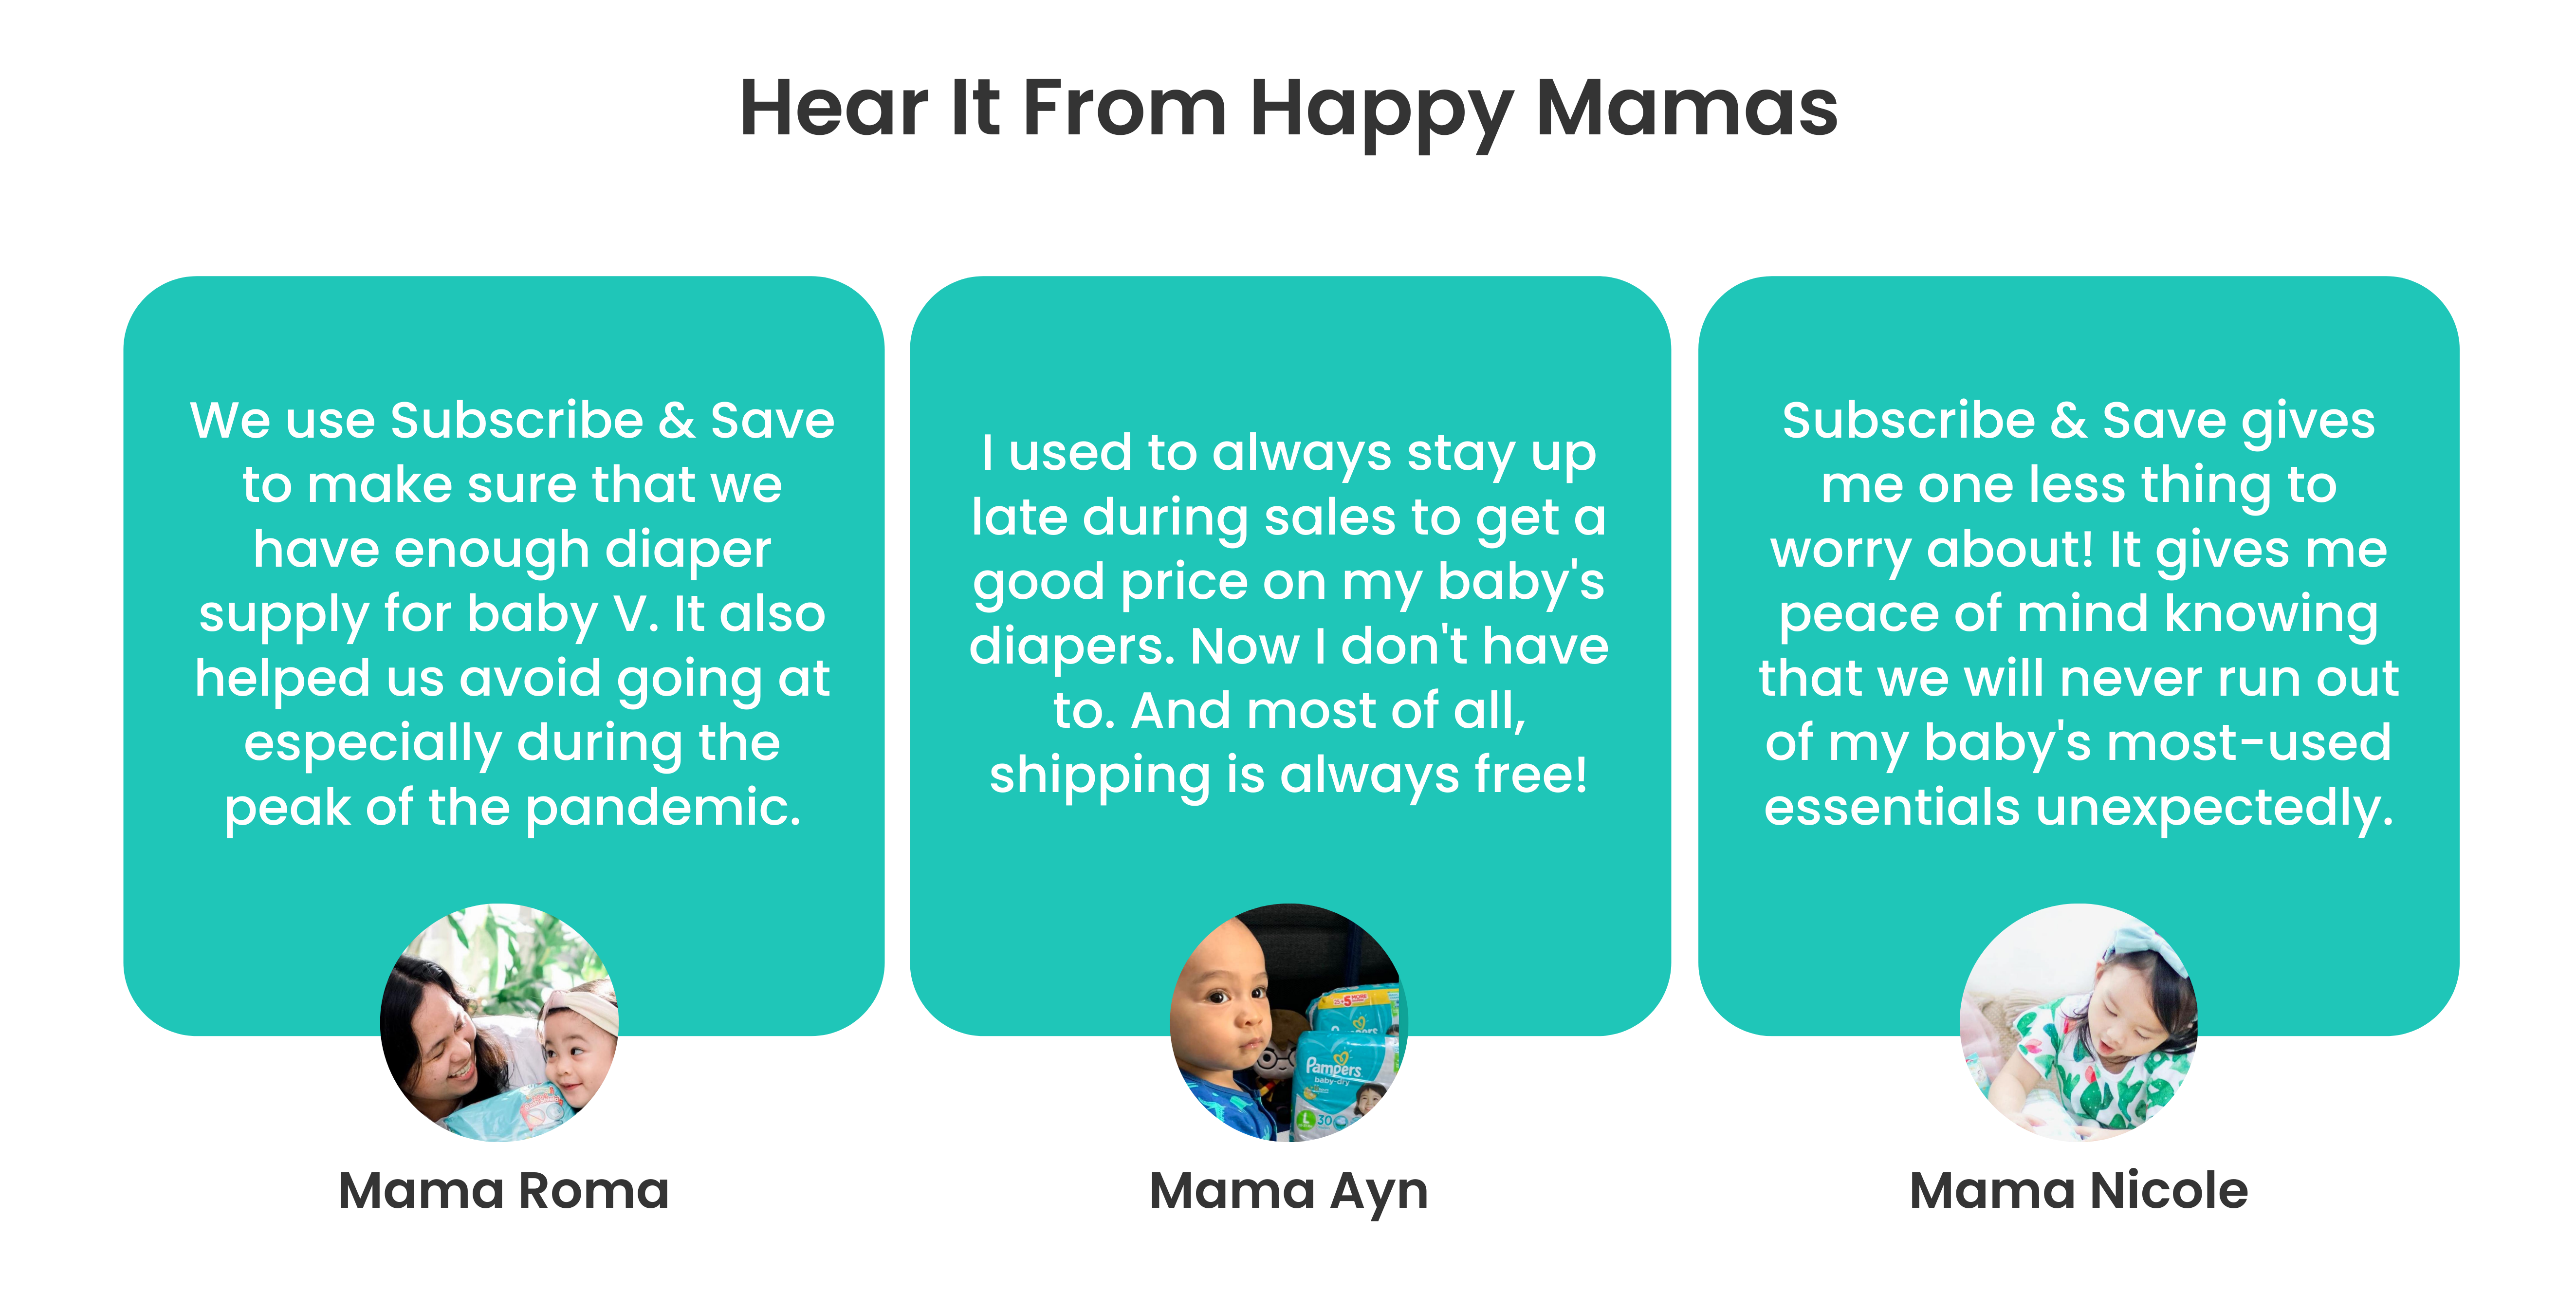 Hear it from Happy Mamas